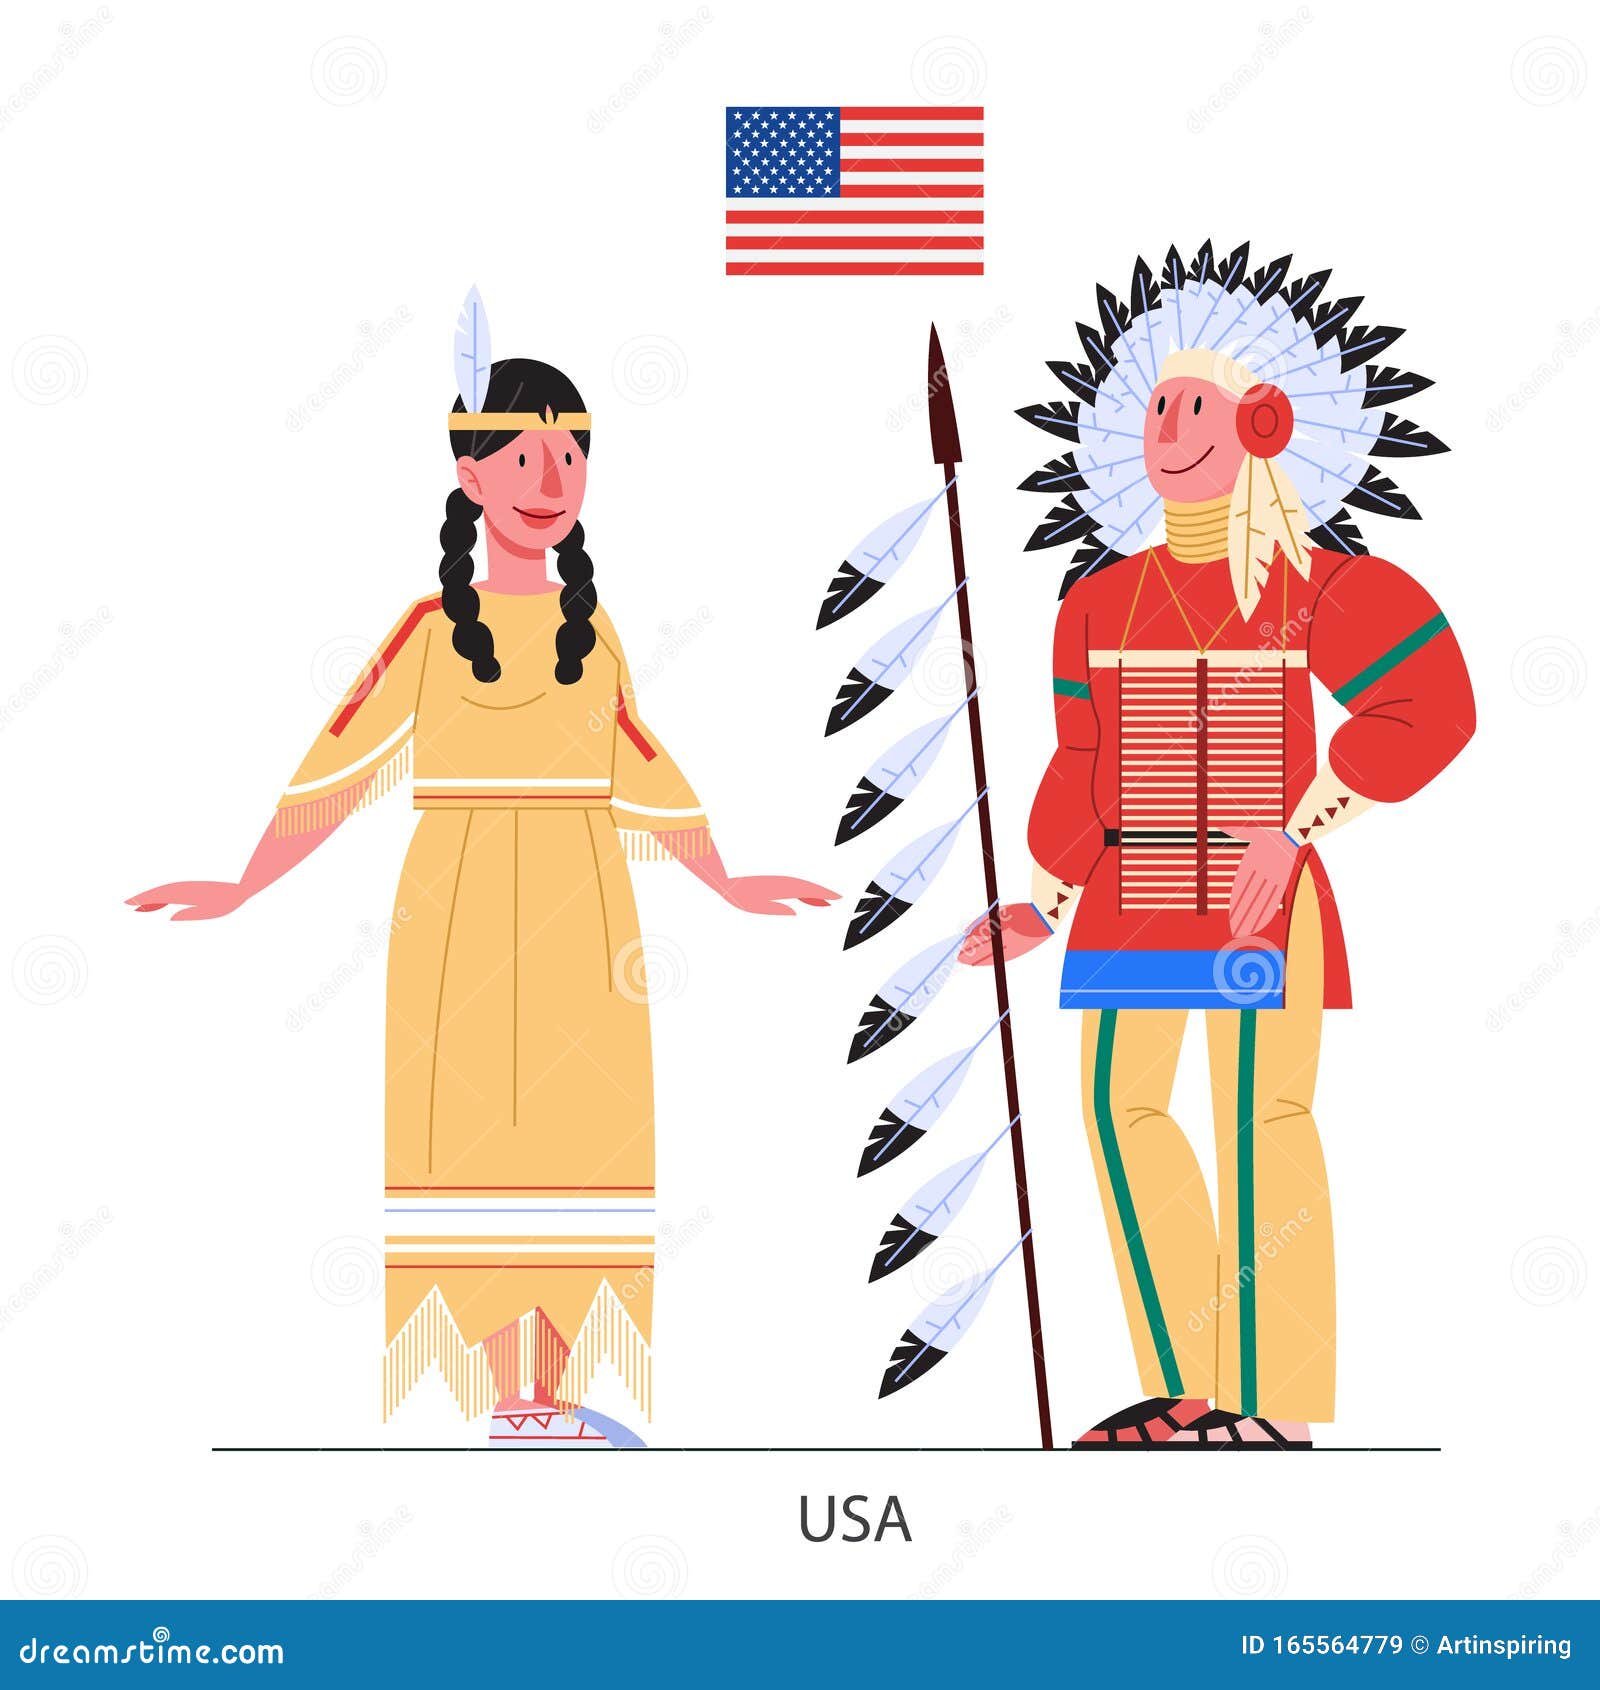 USA Traditional Dress